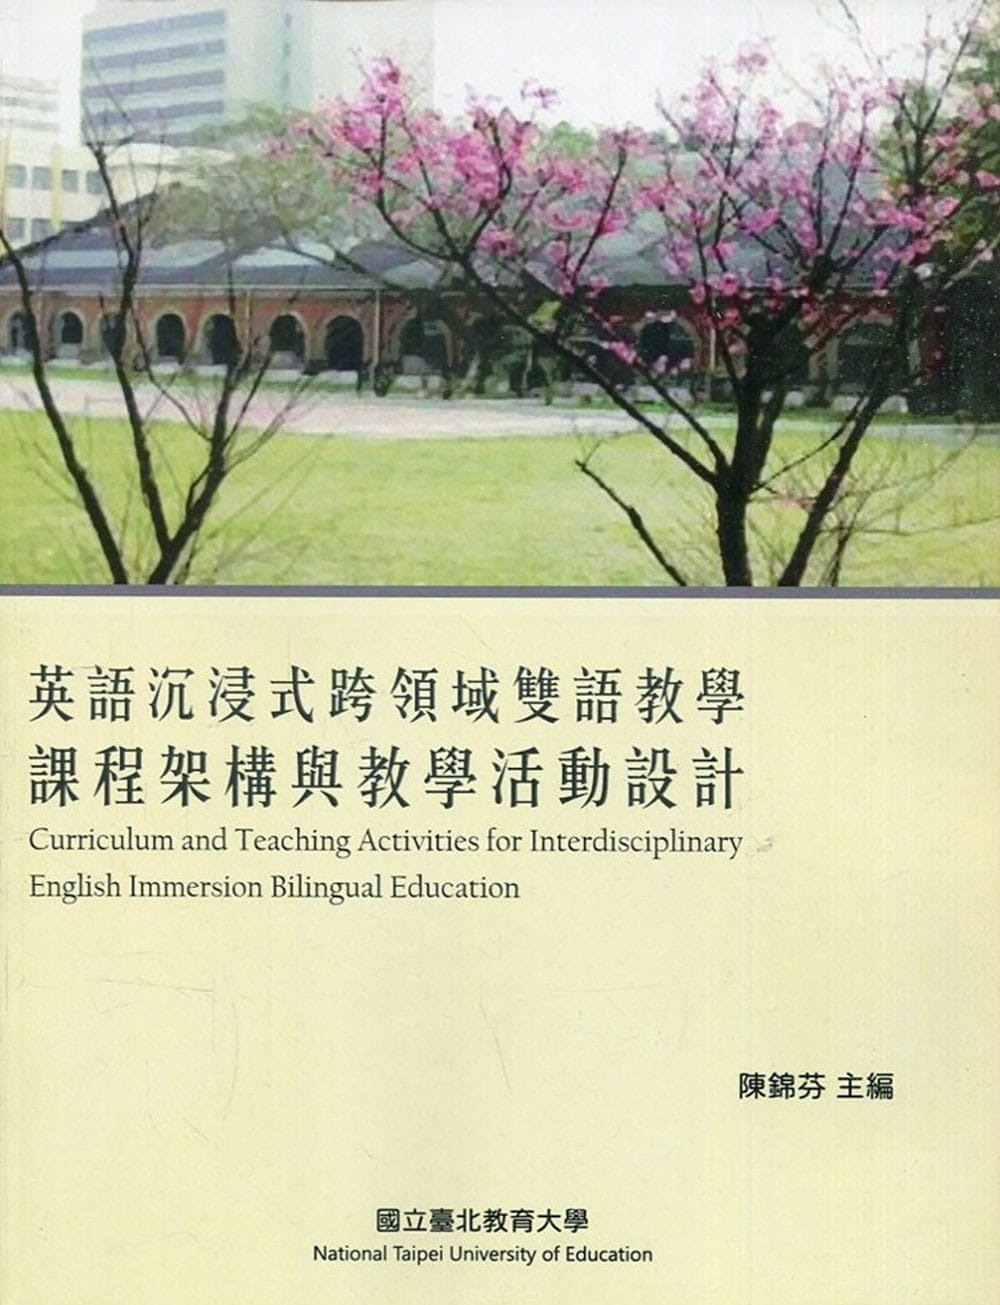 英語沉浸式跨領域雙語教學課程架構與教學活動設計